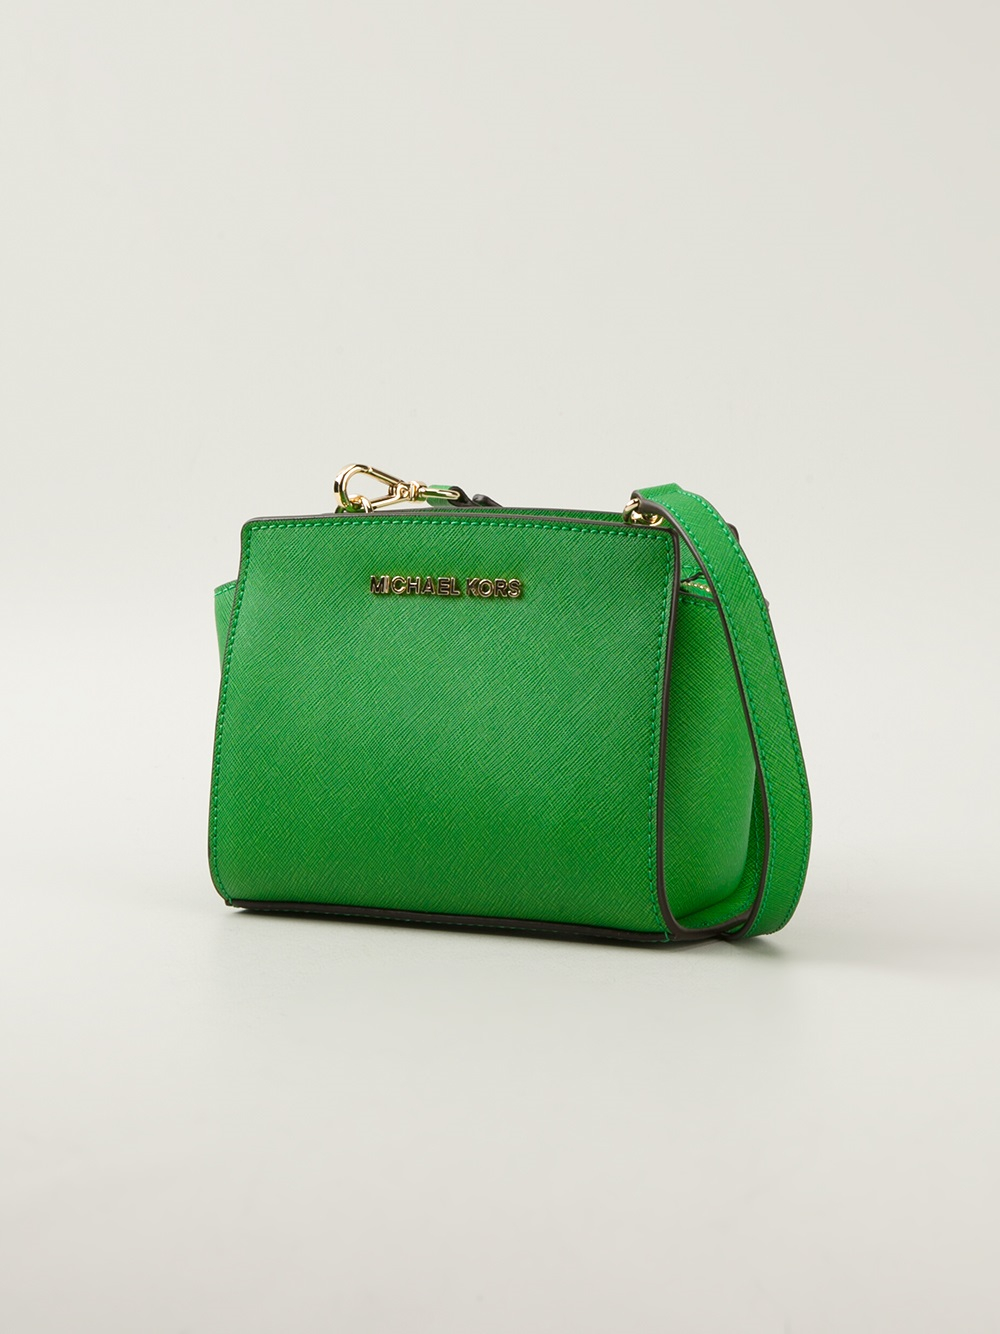 green dooney and bourke handbags